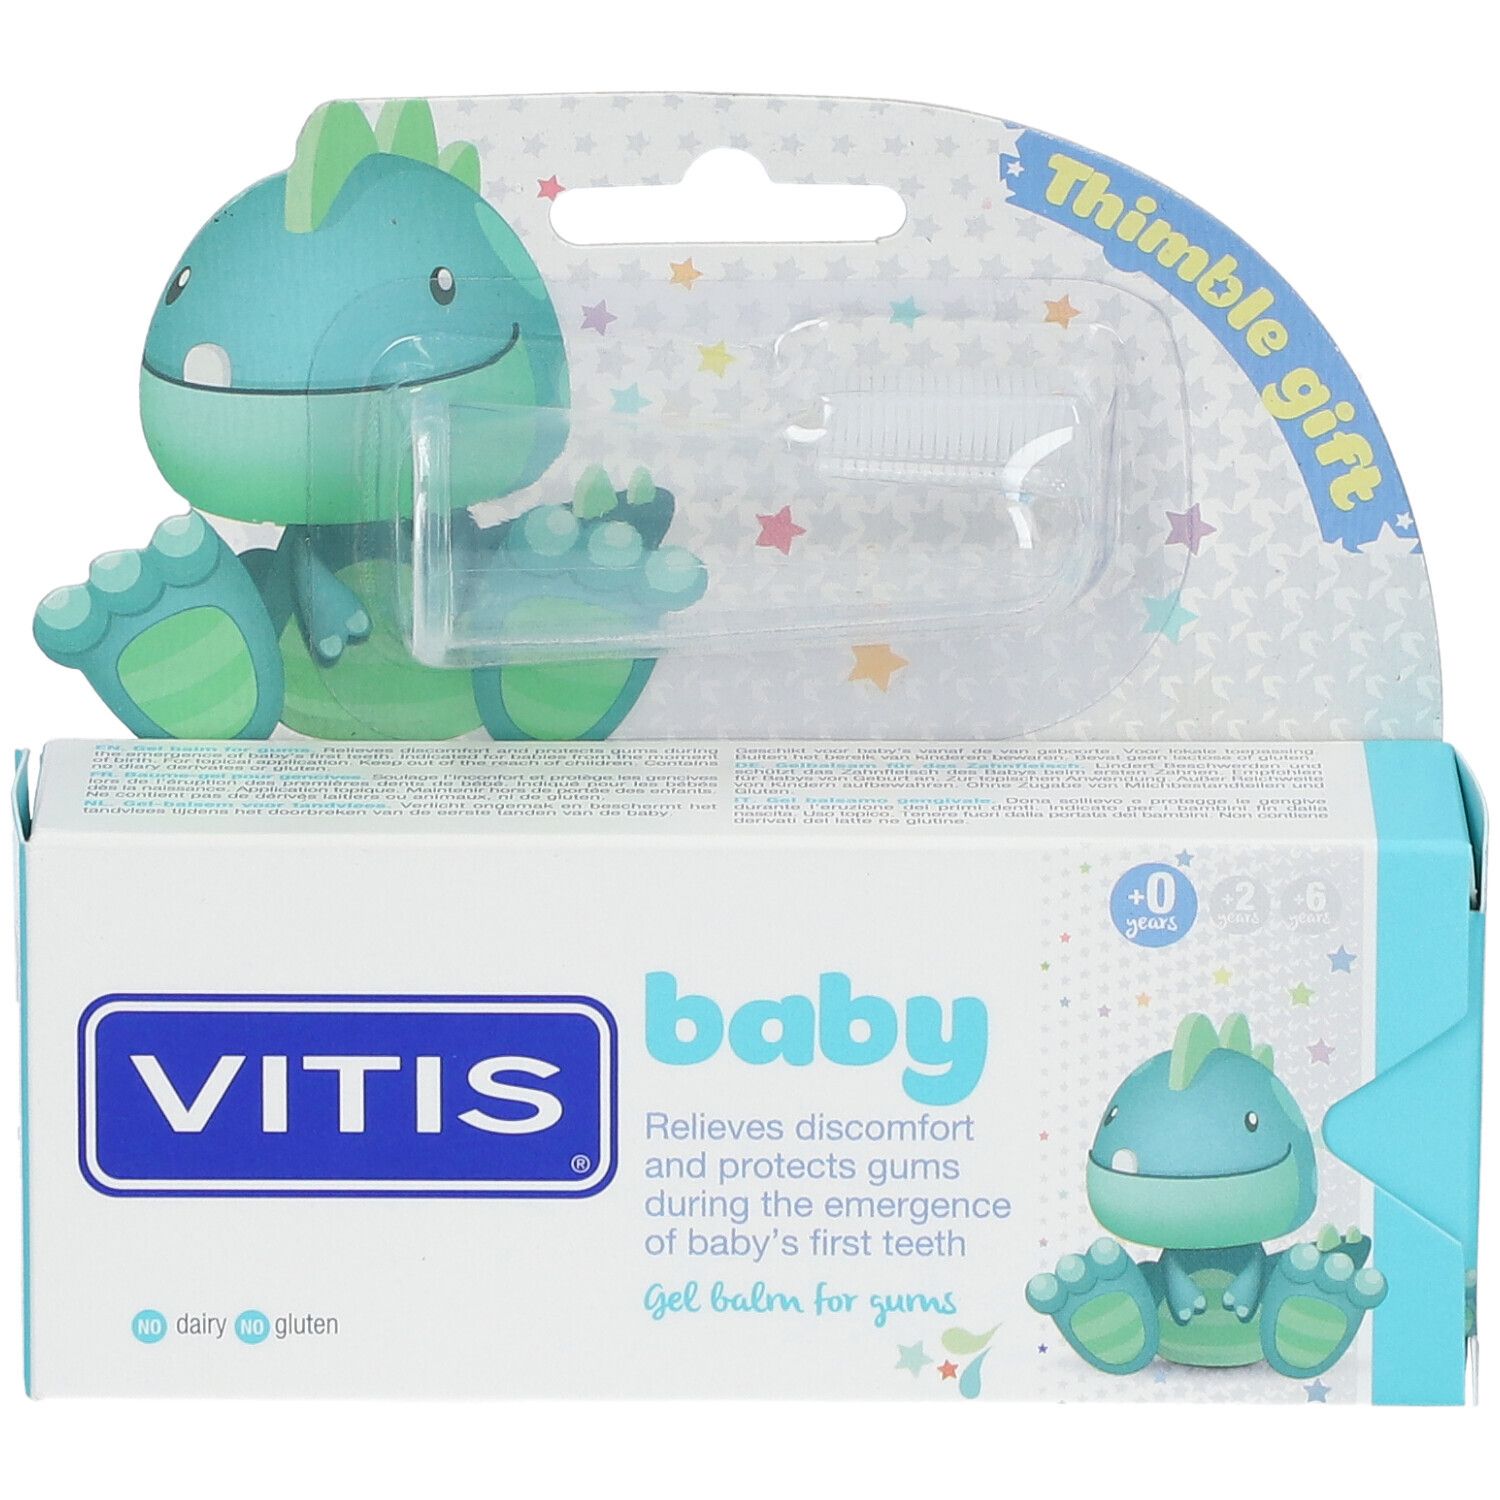 VITIS® Baby Gelbalsam + Fingerzahnbürste